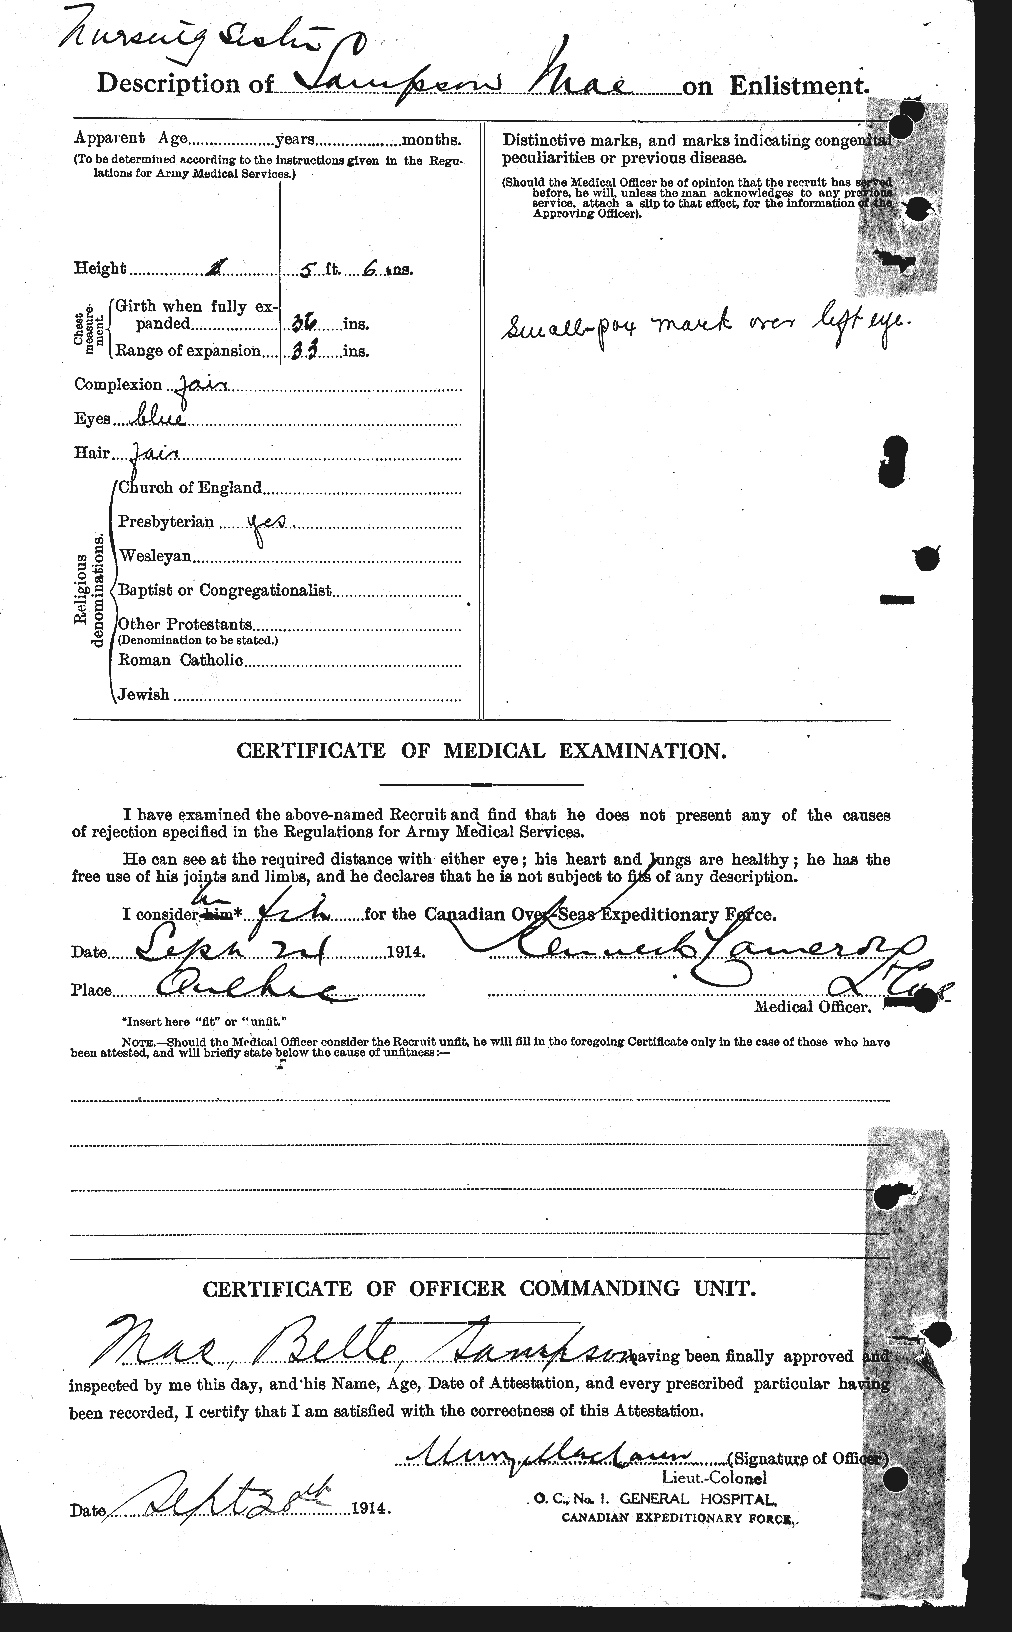 Dossiers du Personnel de la Première Guerre mondiale - CEC 237317b